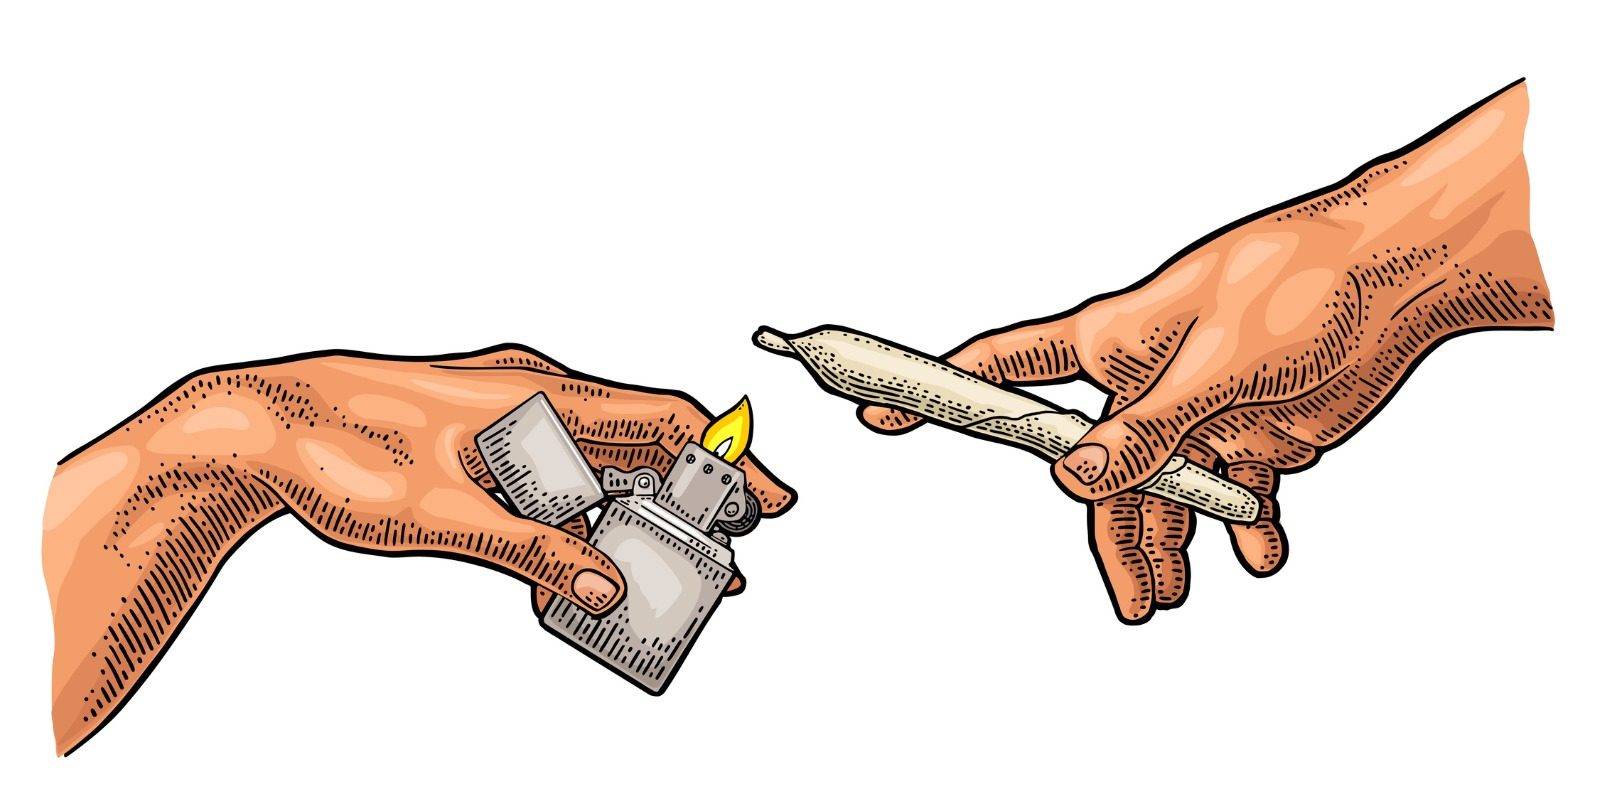 Illustration de deux mains. Celle de gauche tient un briquet zippo ouvert avec une flamme. Celle de droite tient un joint roulé qu'elle penche au dessus du briquet pour l'allumer.